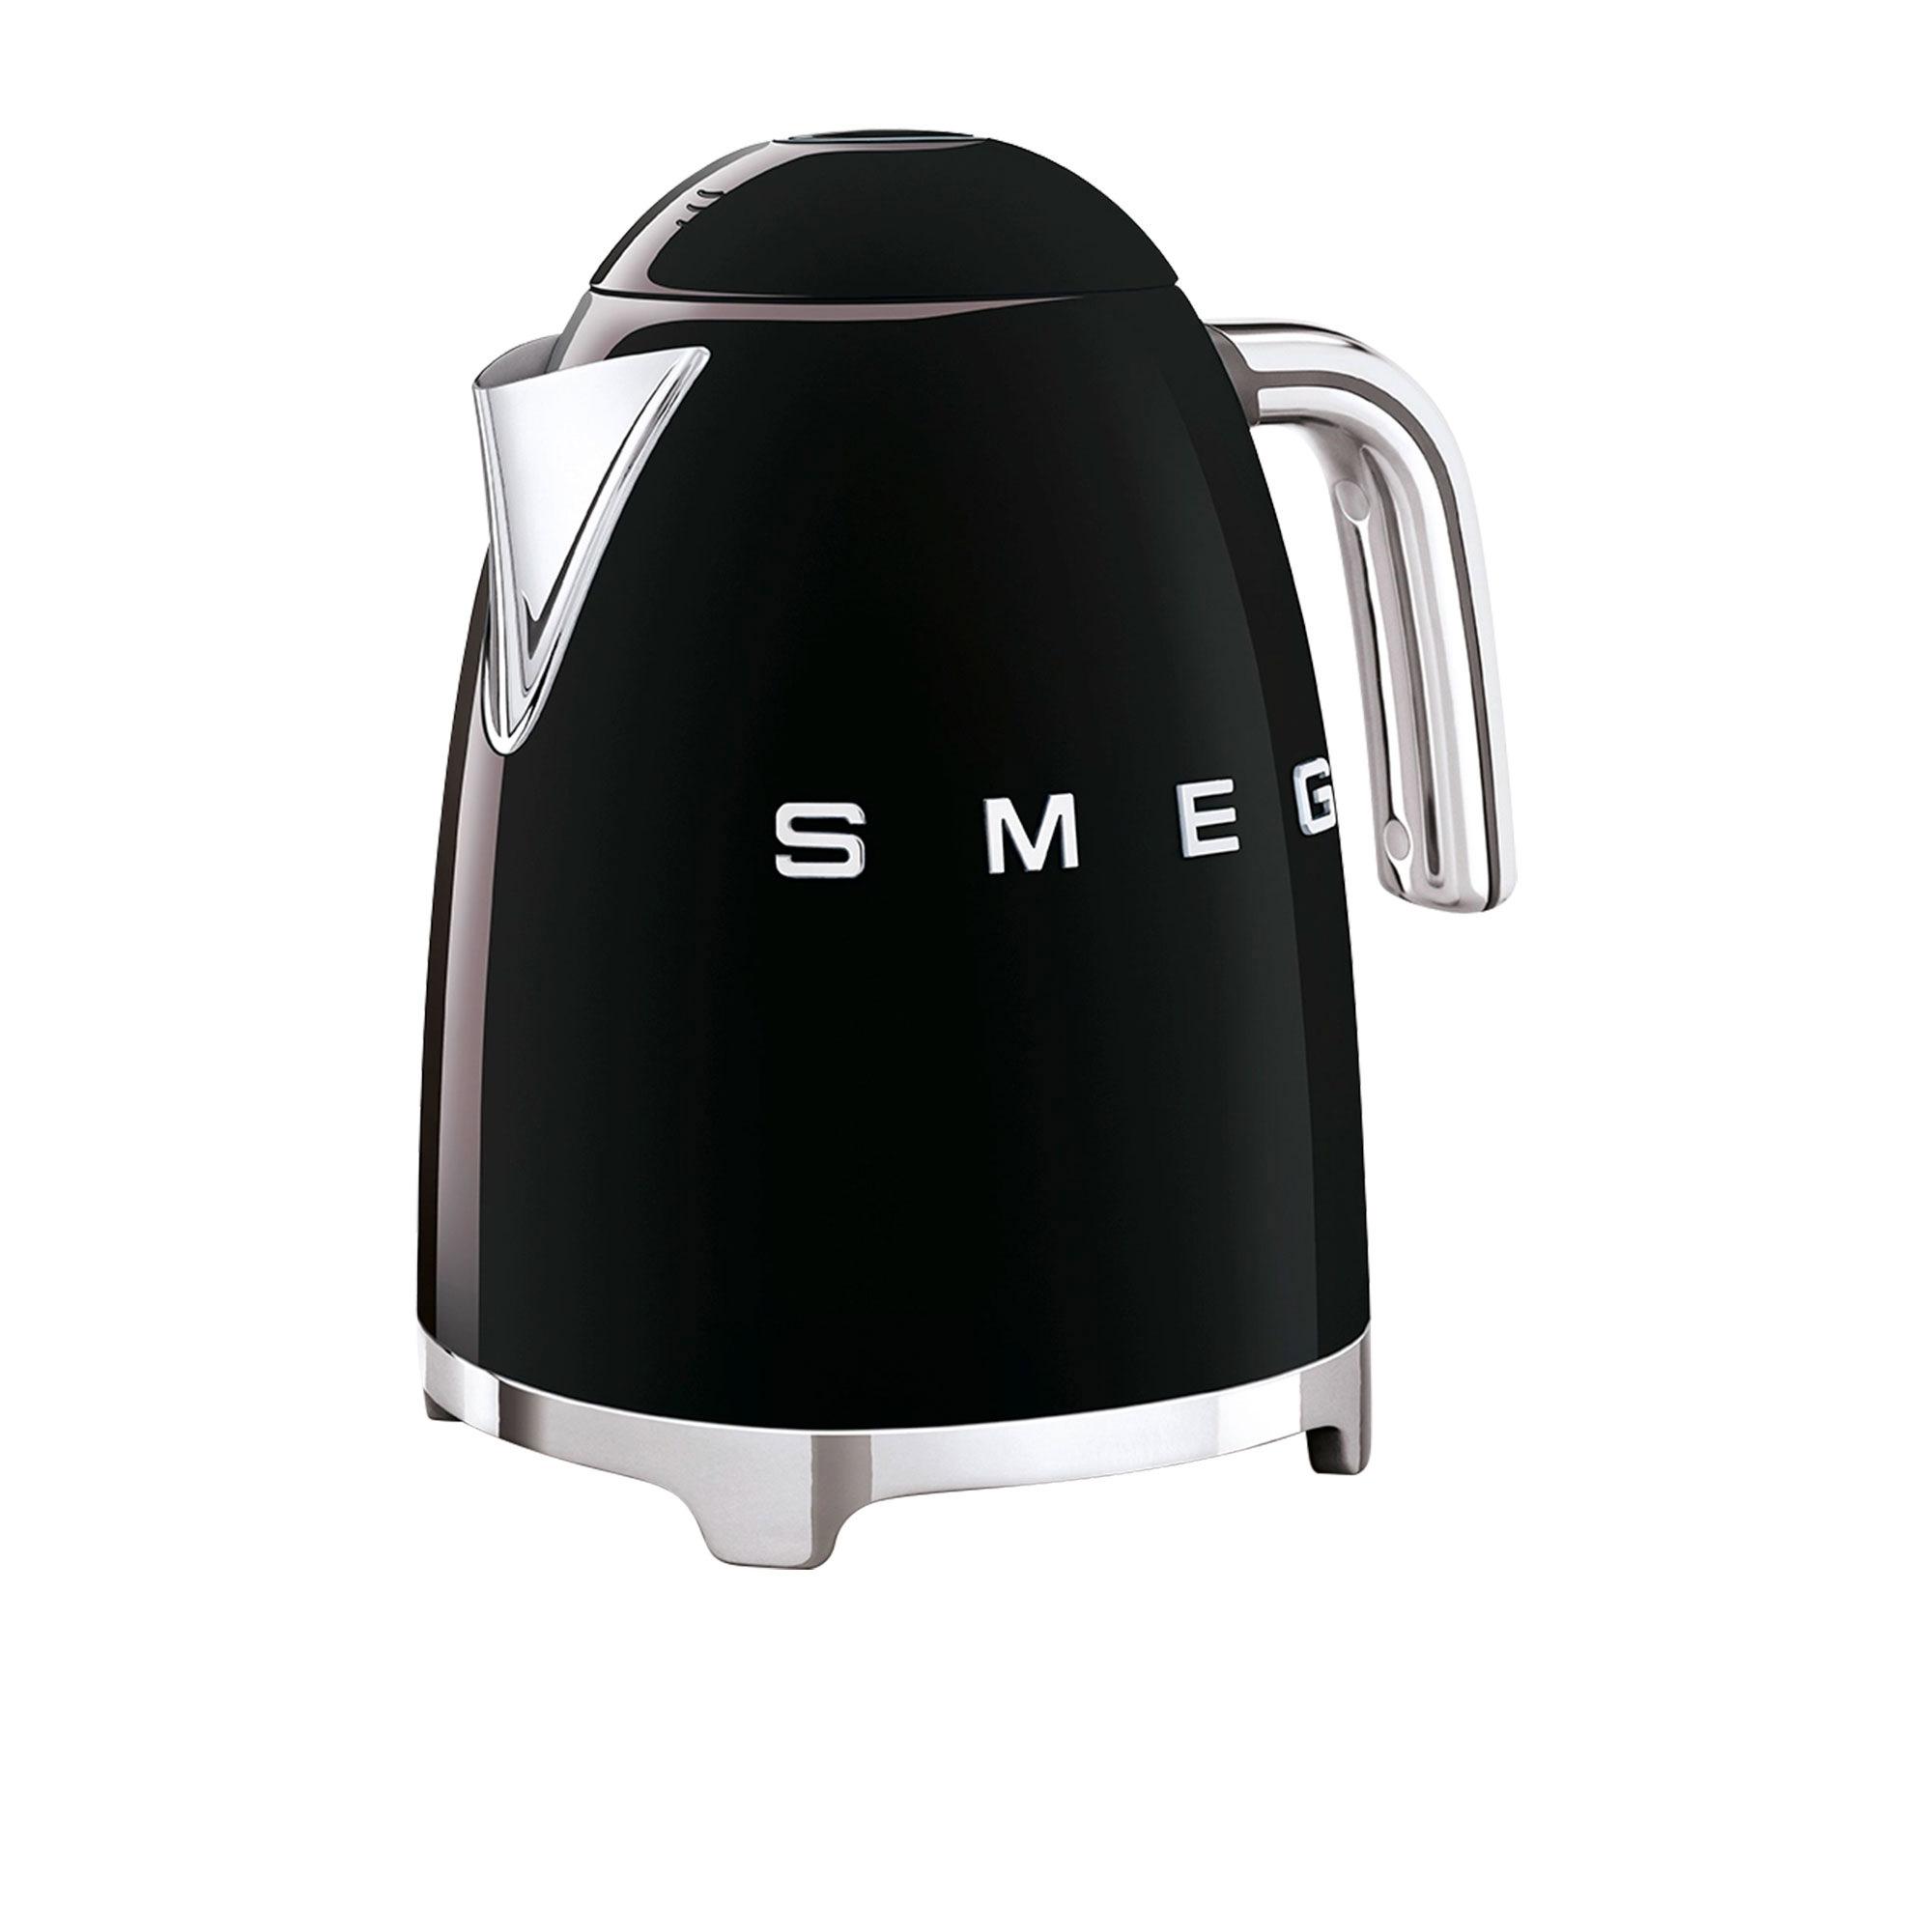 Smeg 50's Retro Style Kettle 1.7L Black Image 2